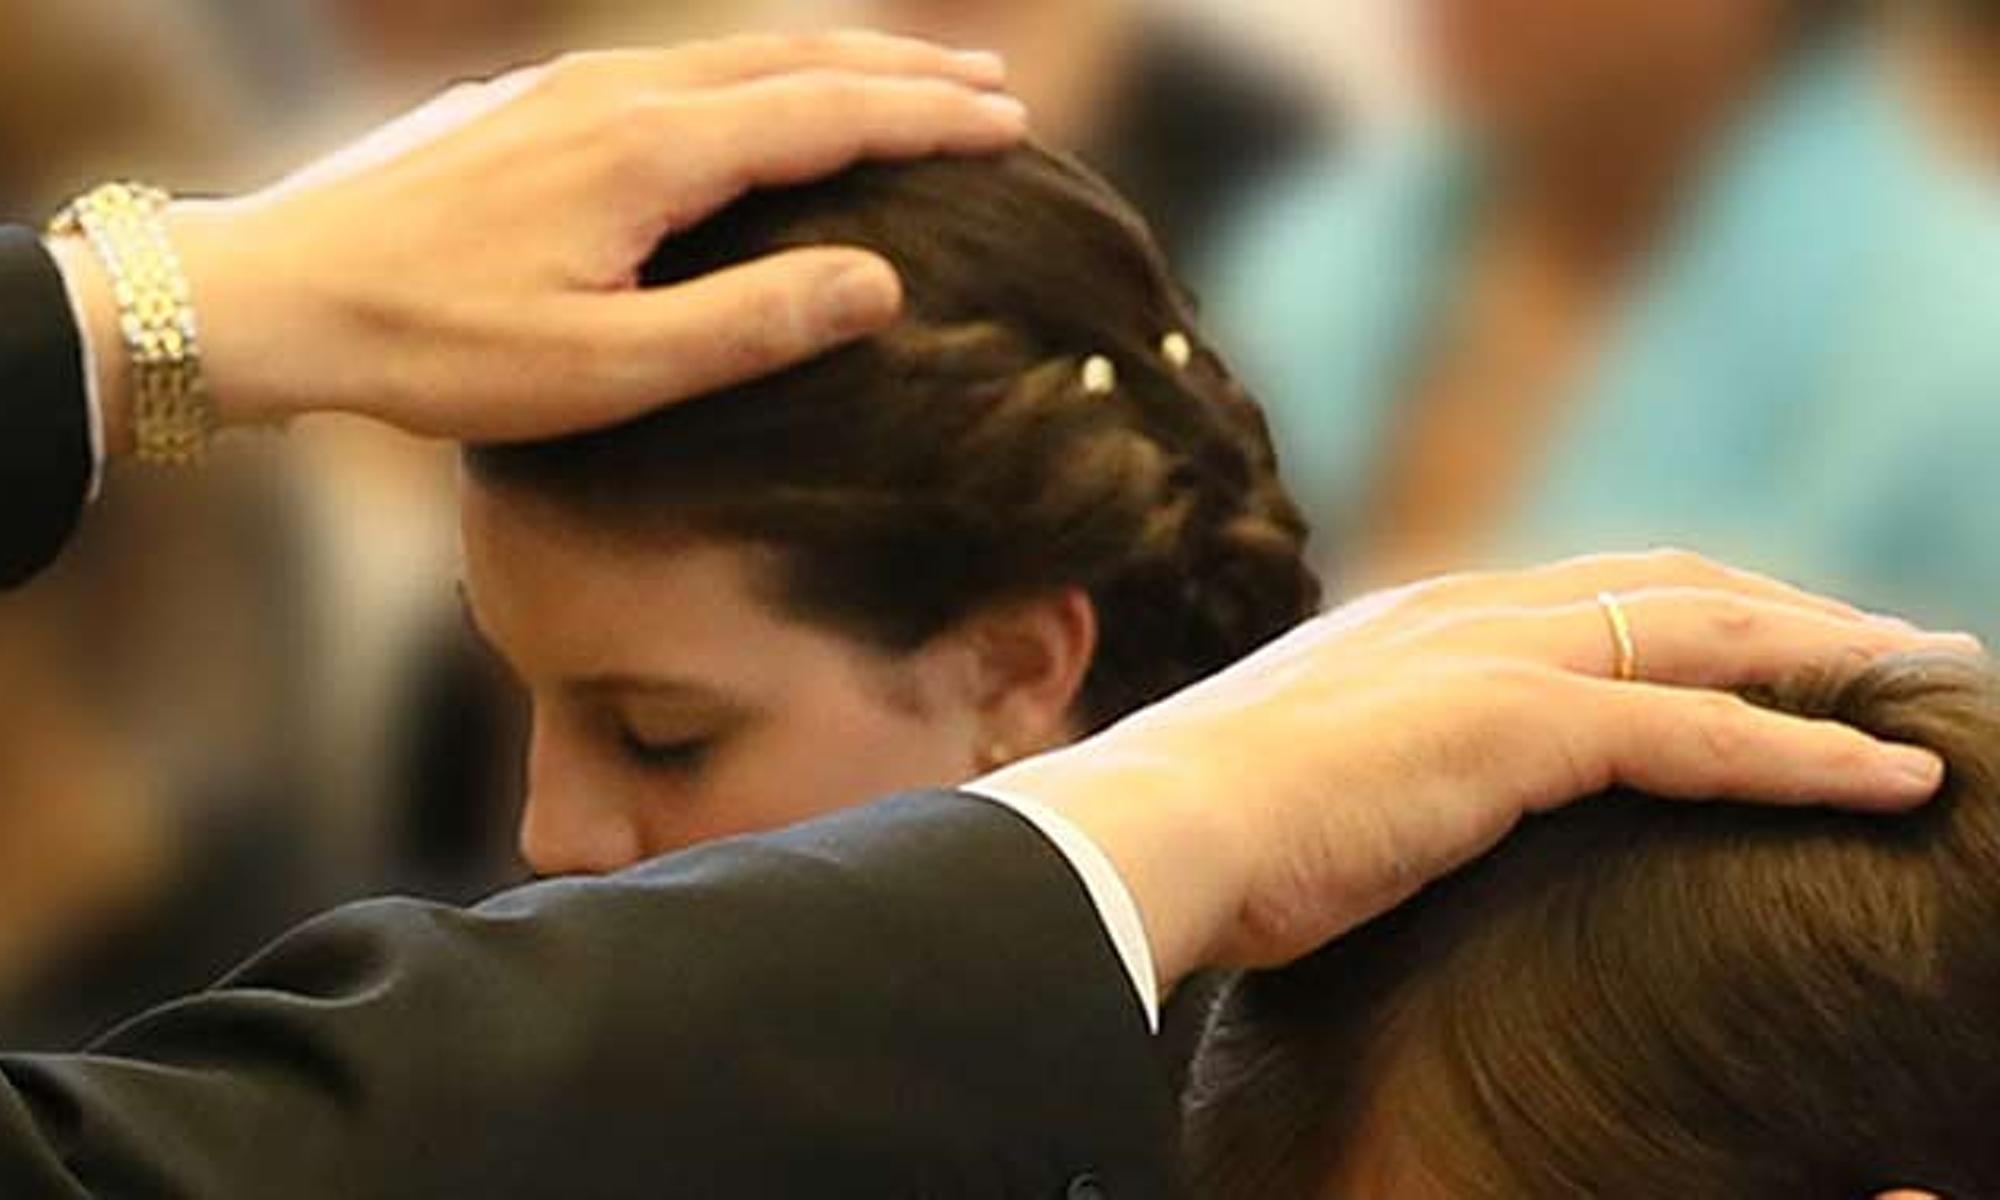 Rund 700 junge neuapostolische Christen feiern in diesem Jahr Konfirmation